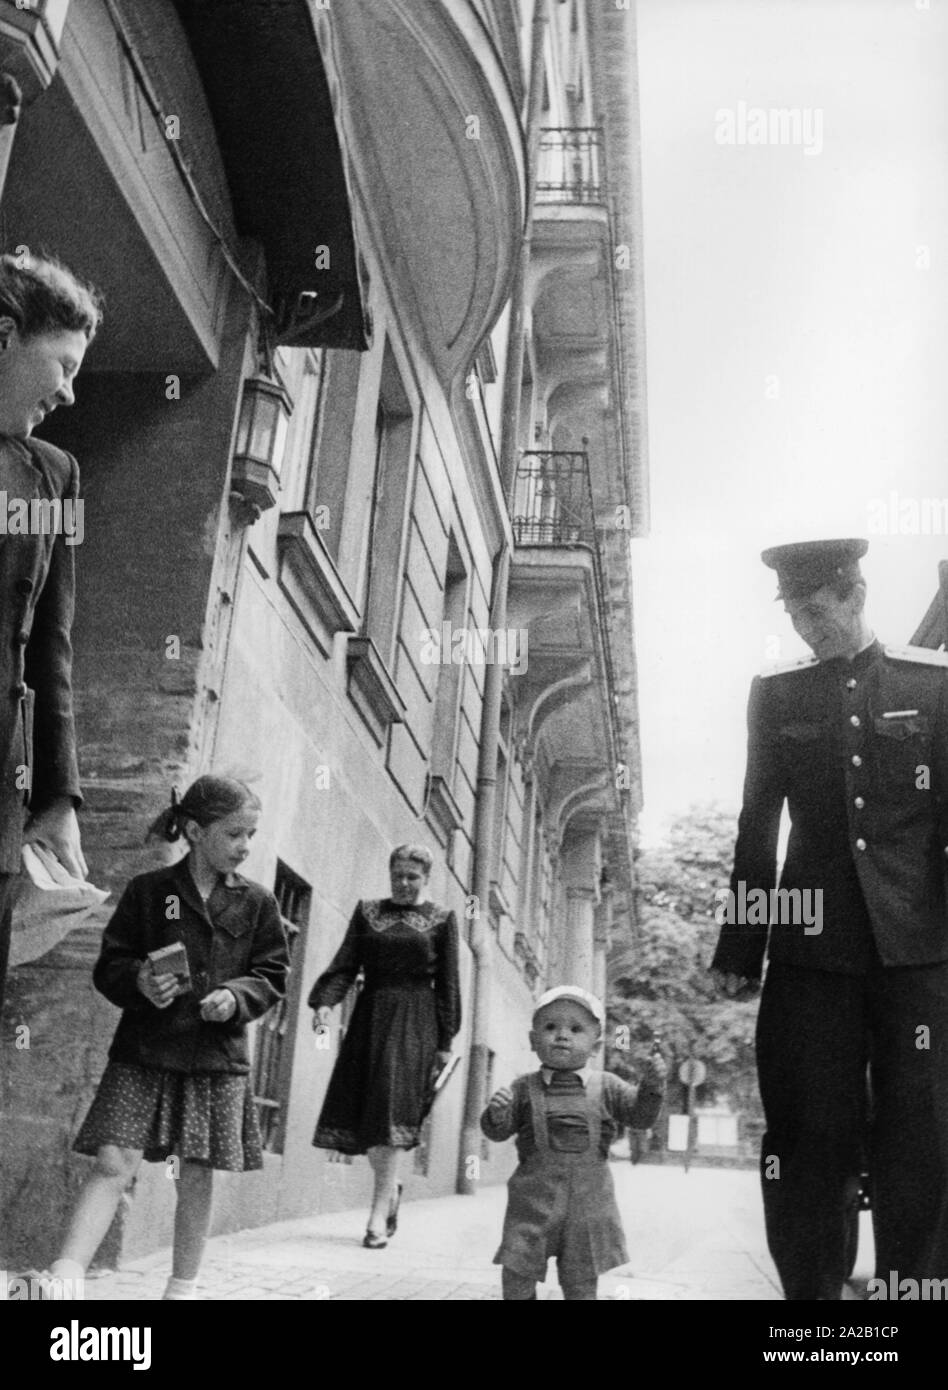 Ein sowjetischer Offizier geht mit seiner Familie durch eine österreichische Stadt. Undatiertes Foto, wahrscheinlich Anfang der 50er Jahre Stockfoto